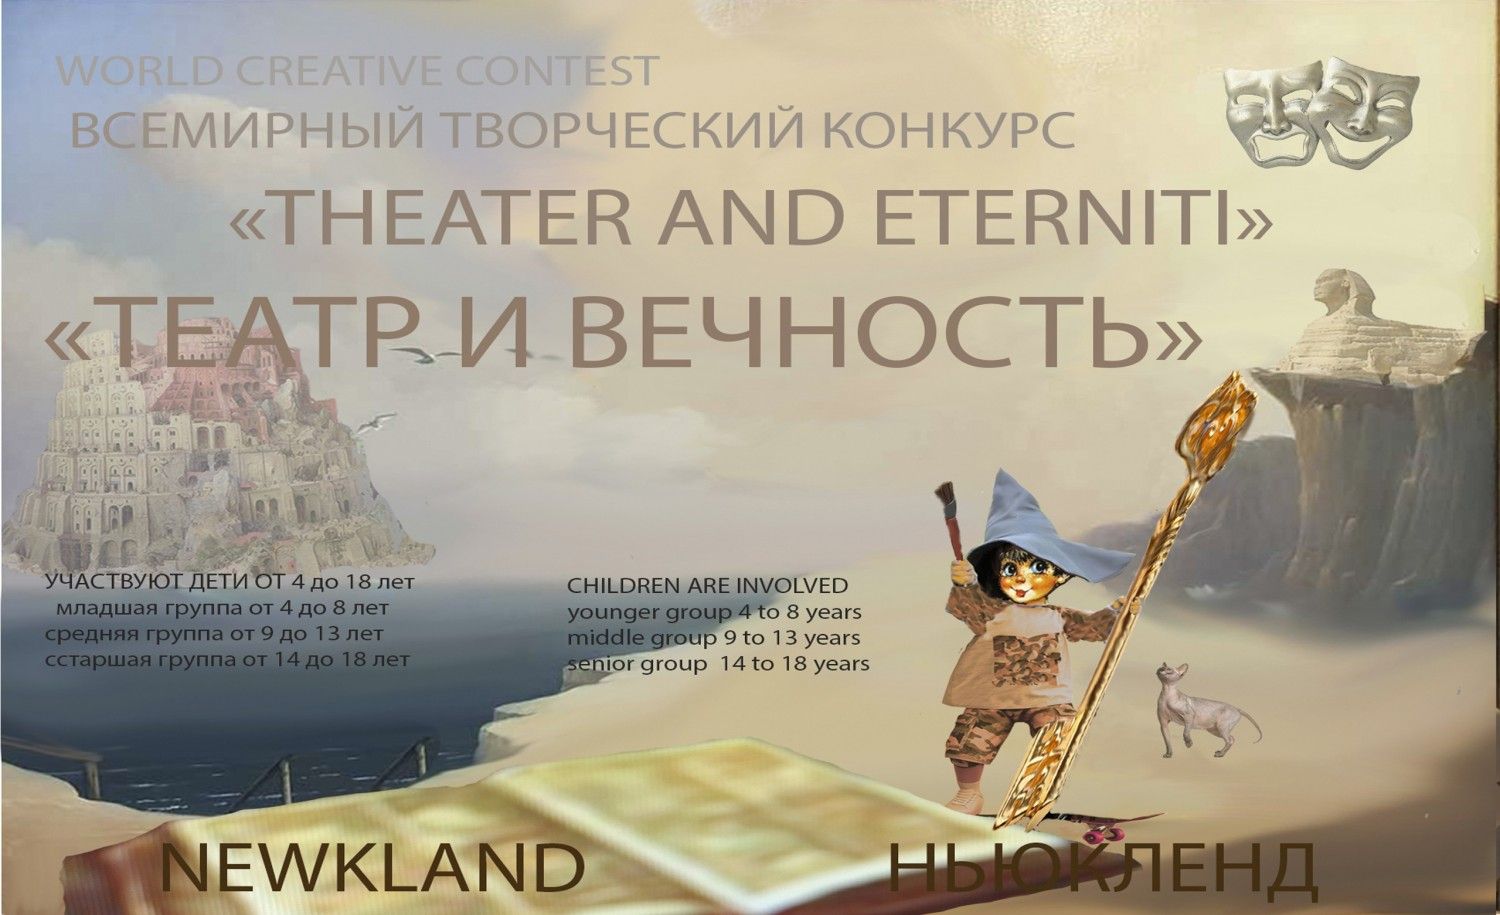 СТРАНА НЬЮКЛЕНД объявляет новый творческий конкурс юных талантов: «Театр и Вечность»